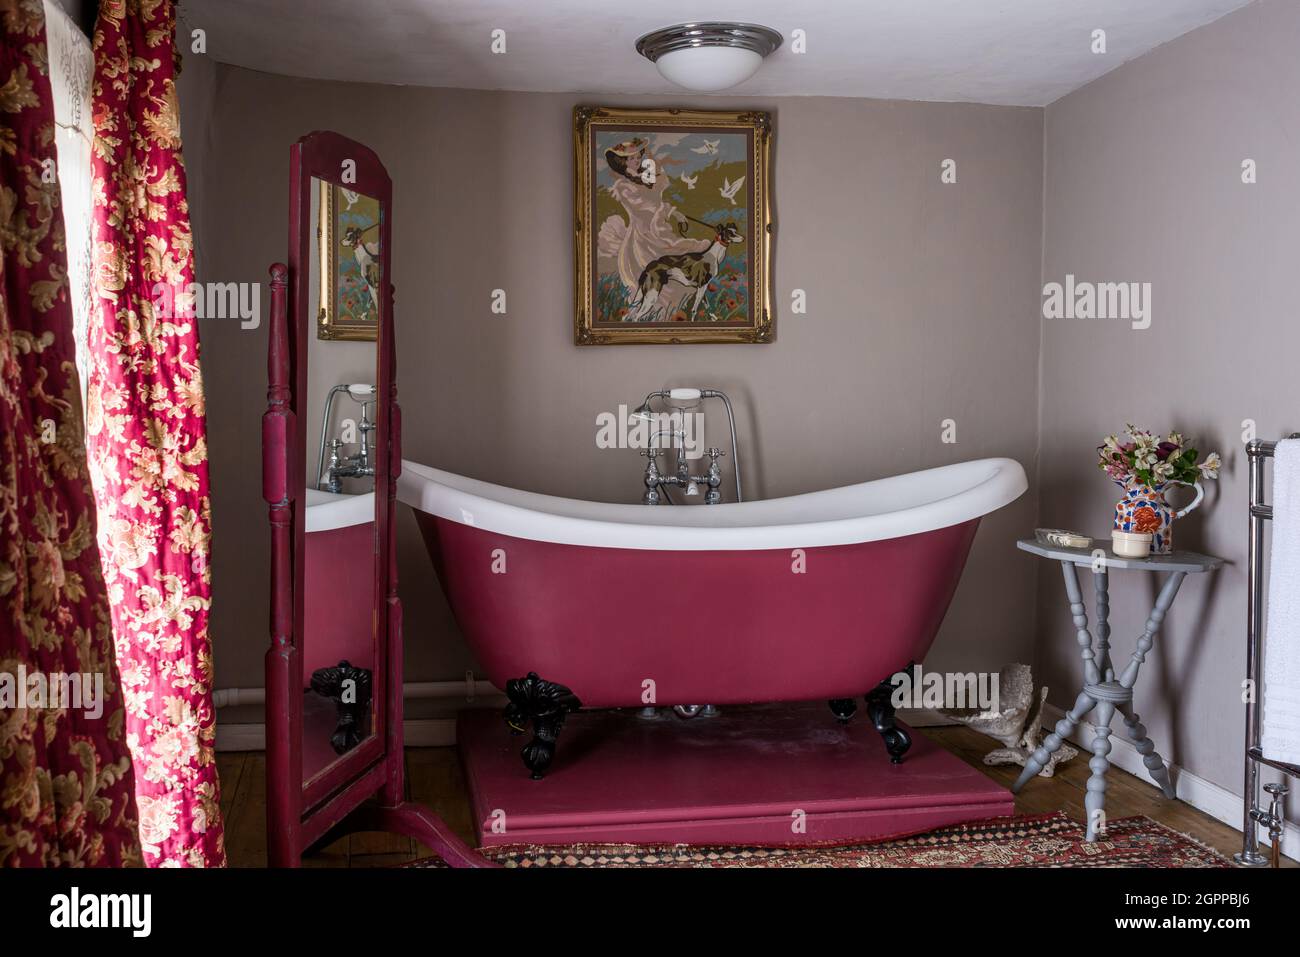 Kräftiges rosa Bad mit Vintage-Vorhängen und Nadelarbeiten in Suffolk Cottage. Stockfoto